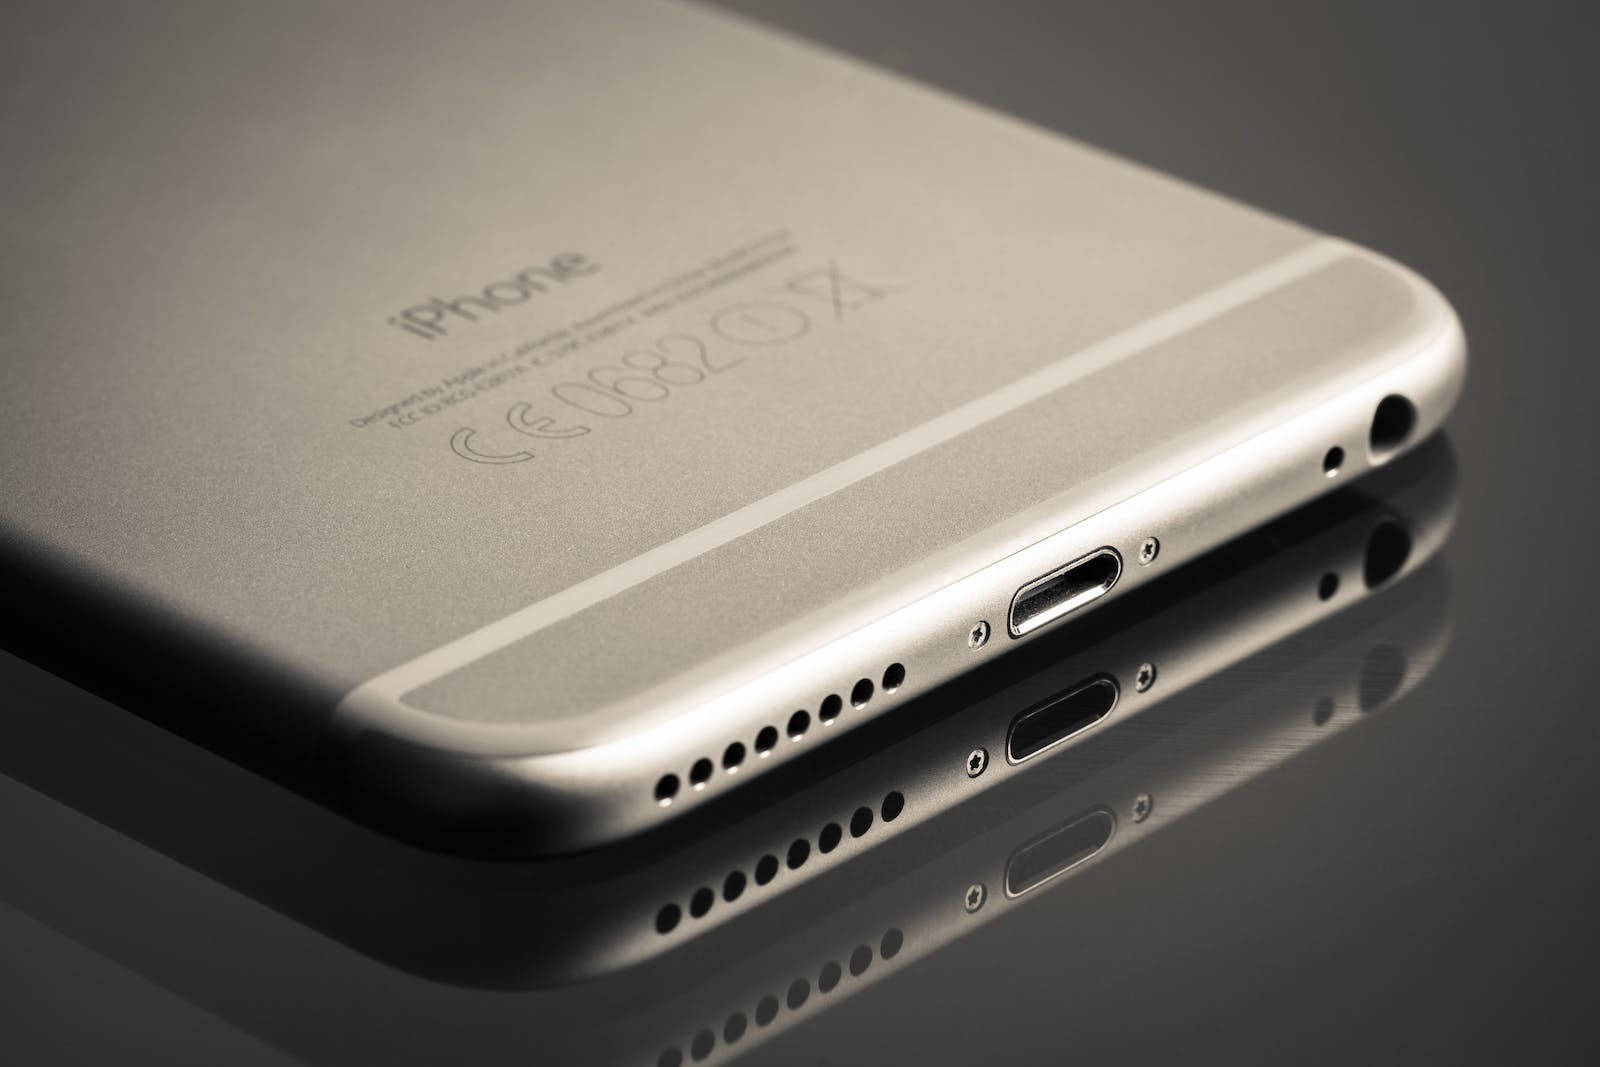 Sølv Original Iphone 6 Design Tapet: Et design der repræsenterer et originalt iPhone 6-mønster. Wallpaper